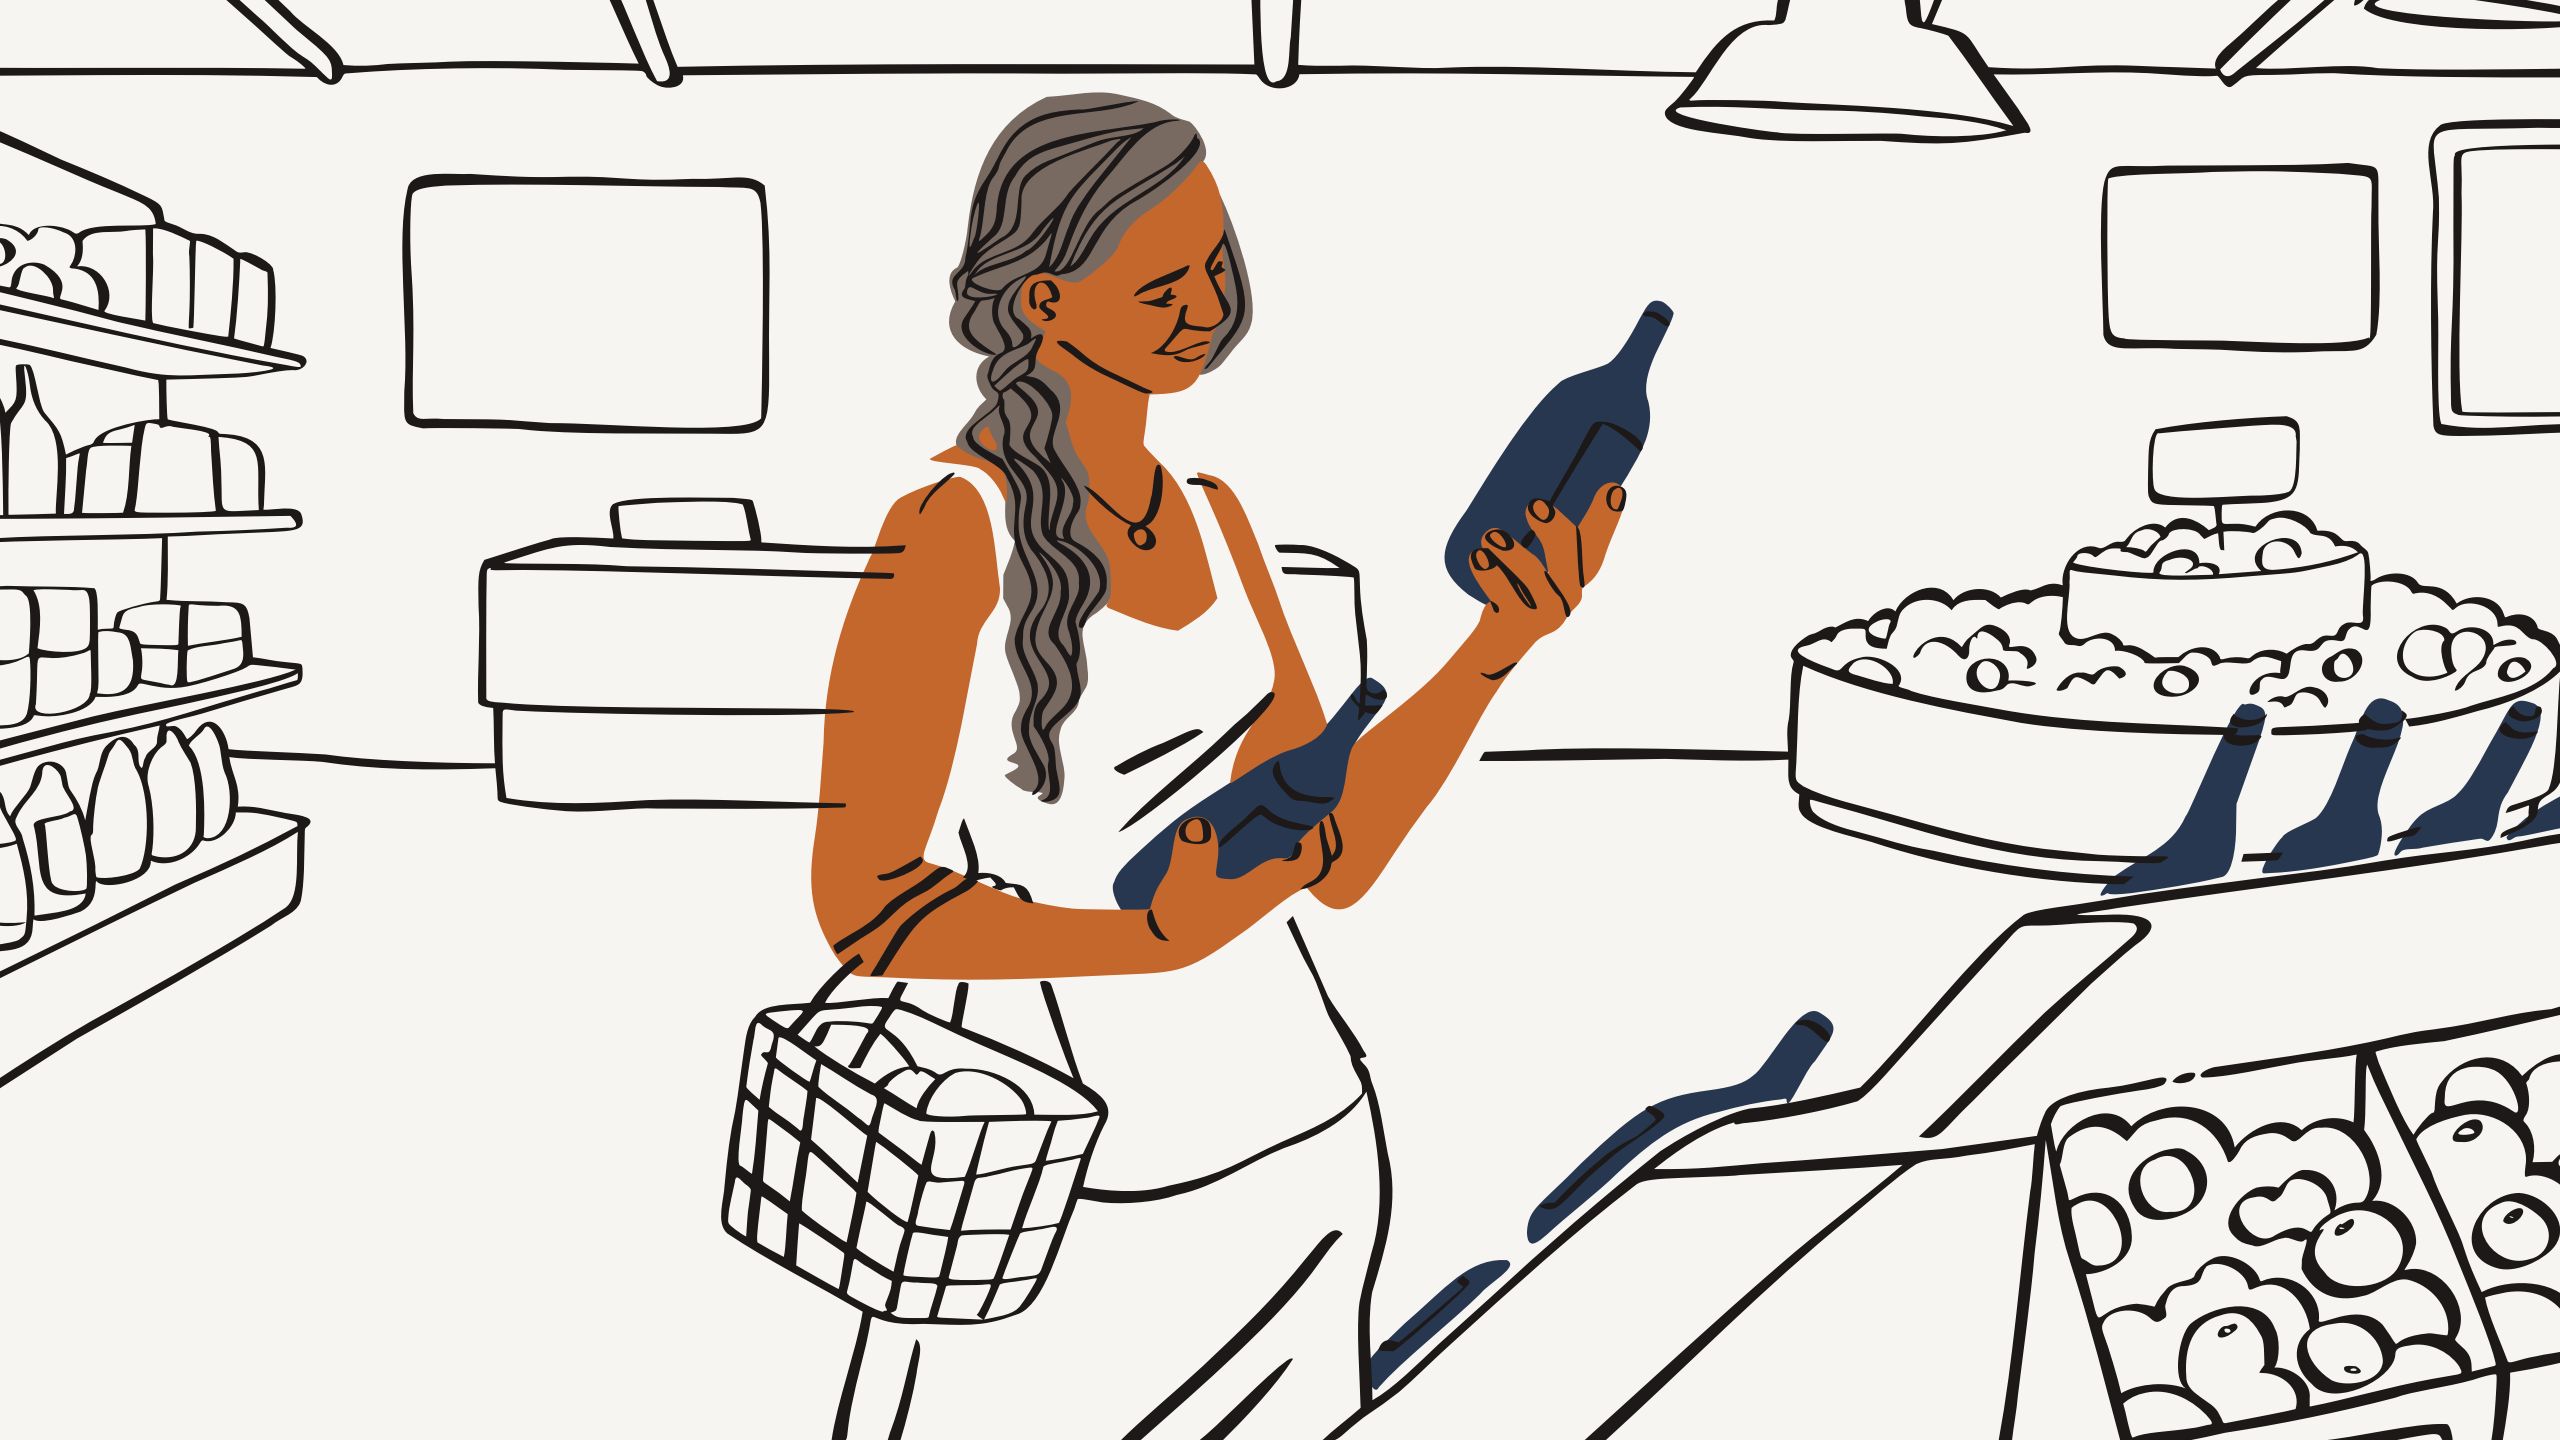 Illustration einer Frau beim Einkaufen, die sich die Etiketten auf Flaschen ansieht